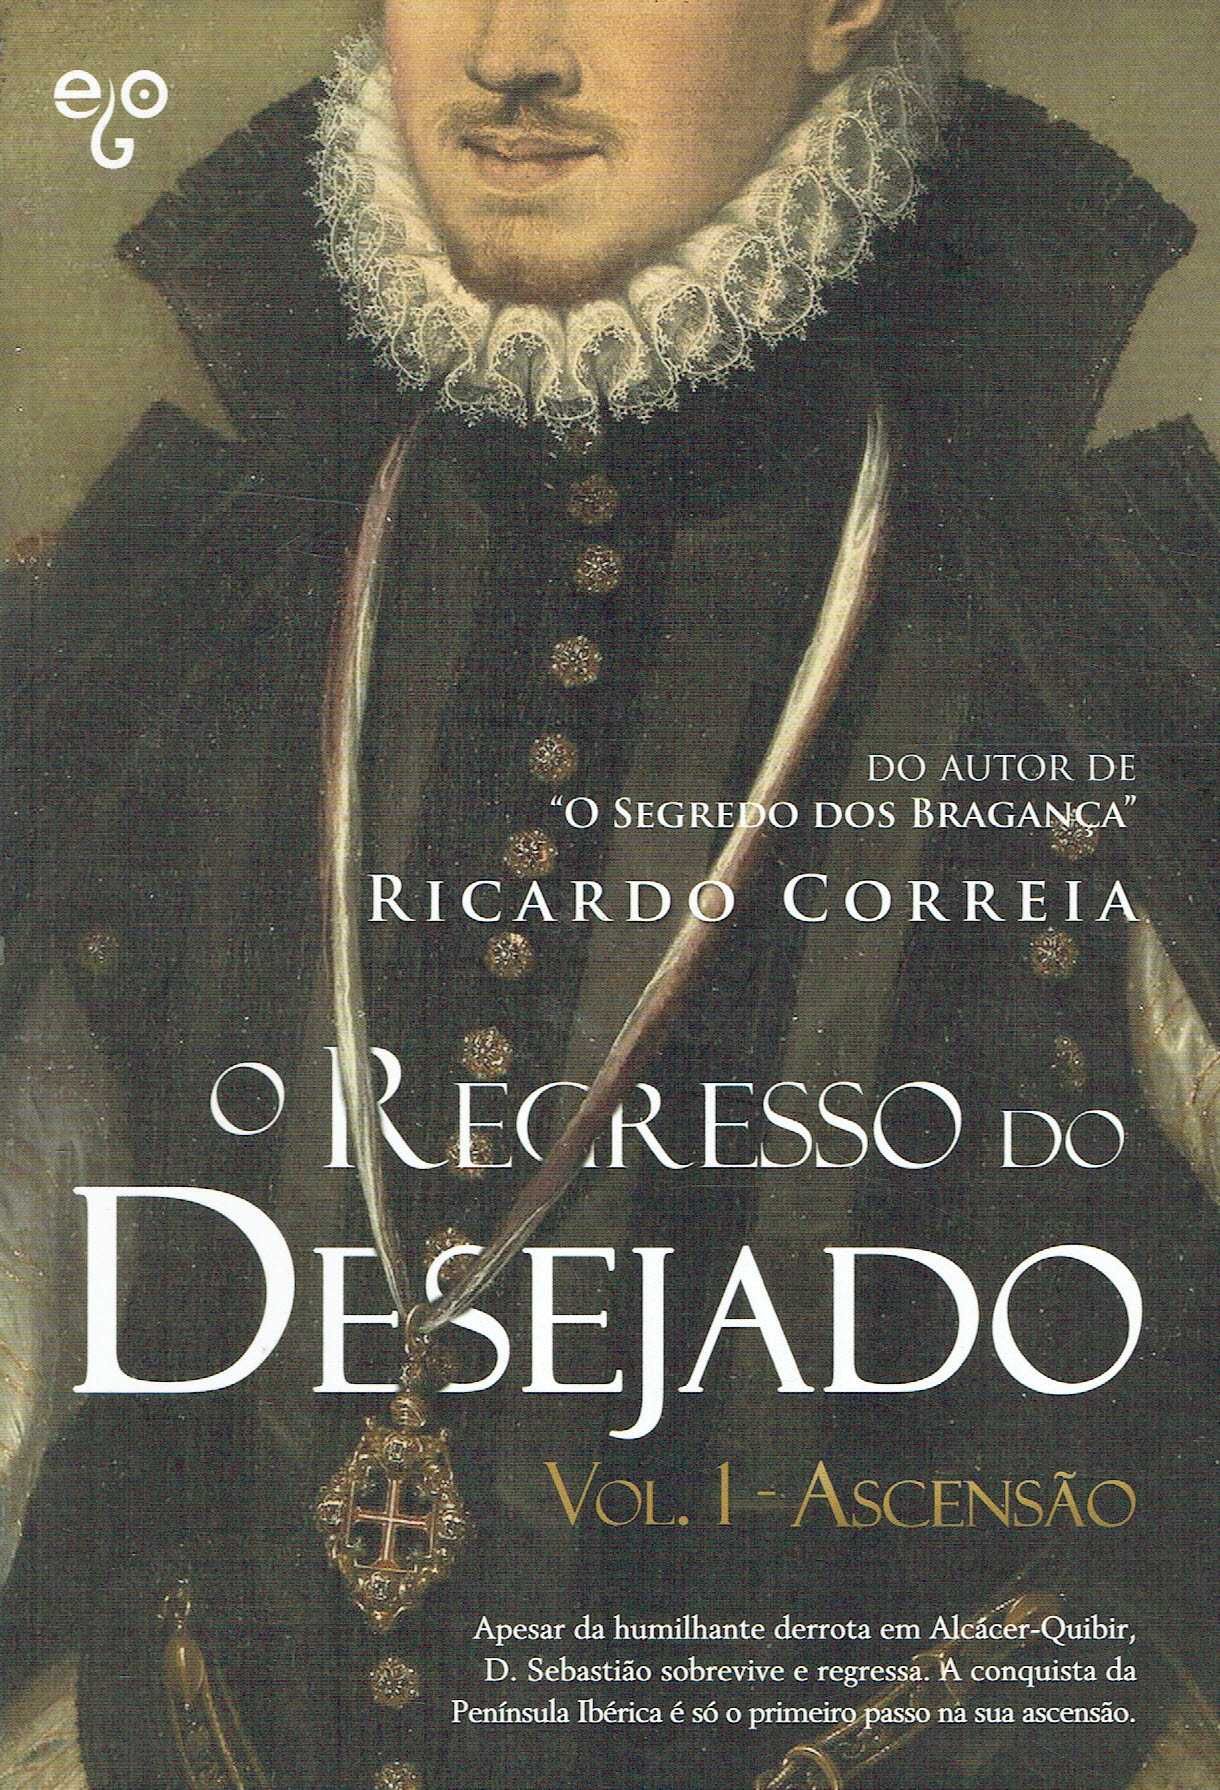 15187

O Regresso do Desejado - Vol. 1
Ascensão
de Ricardo Correia